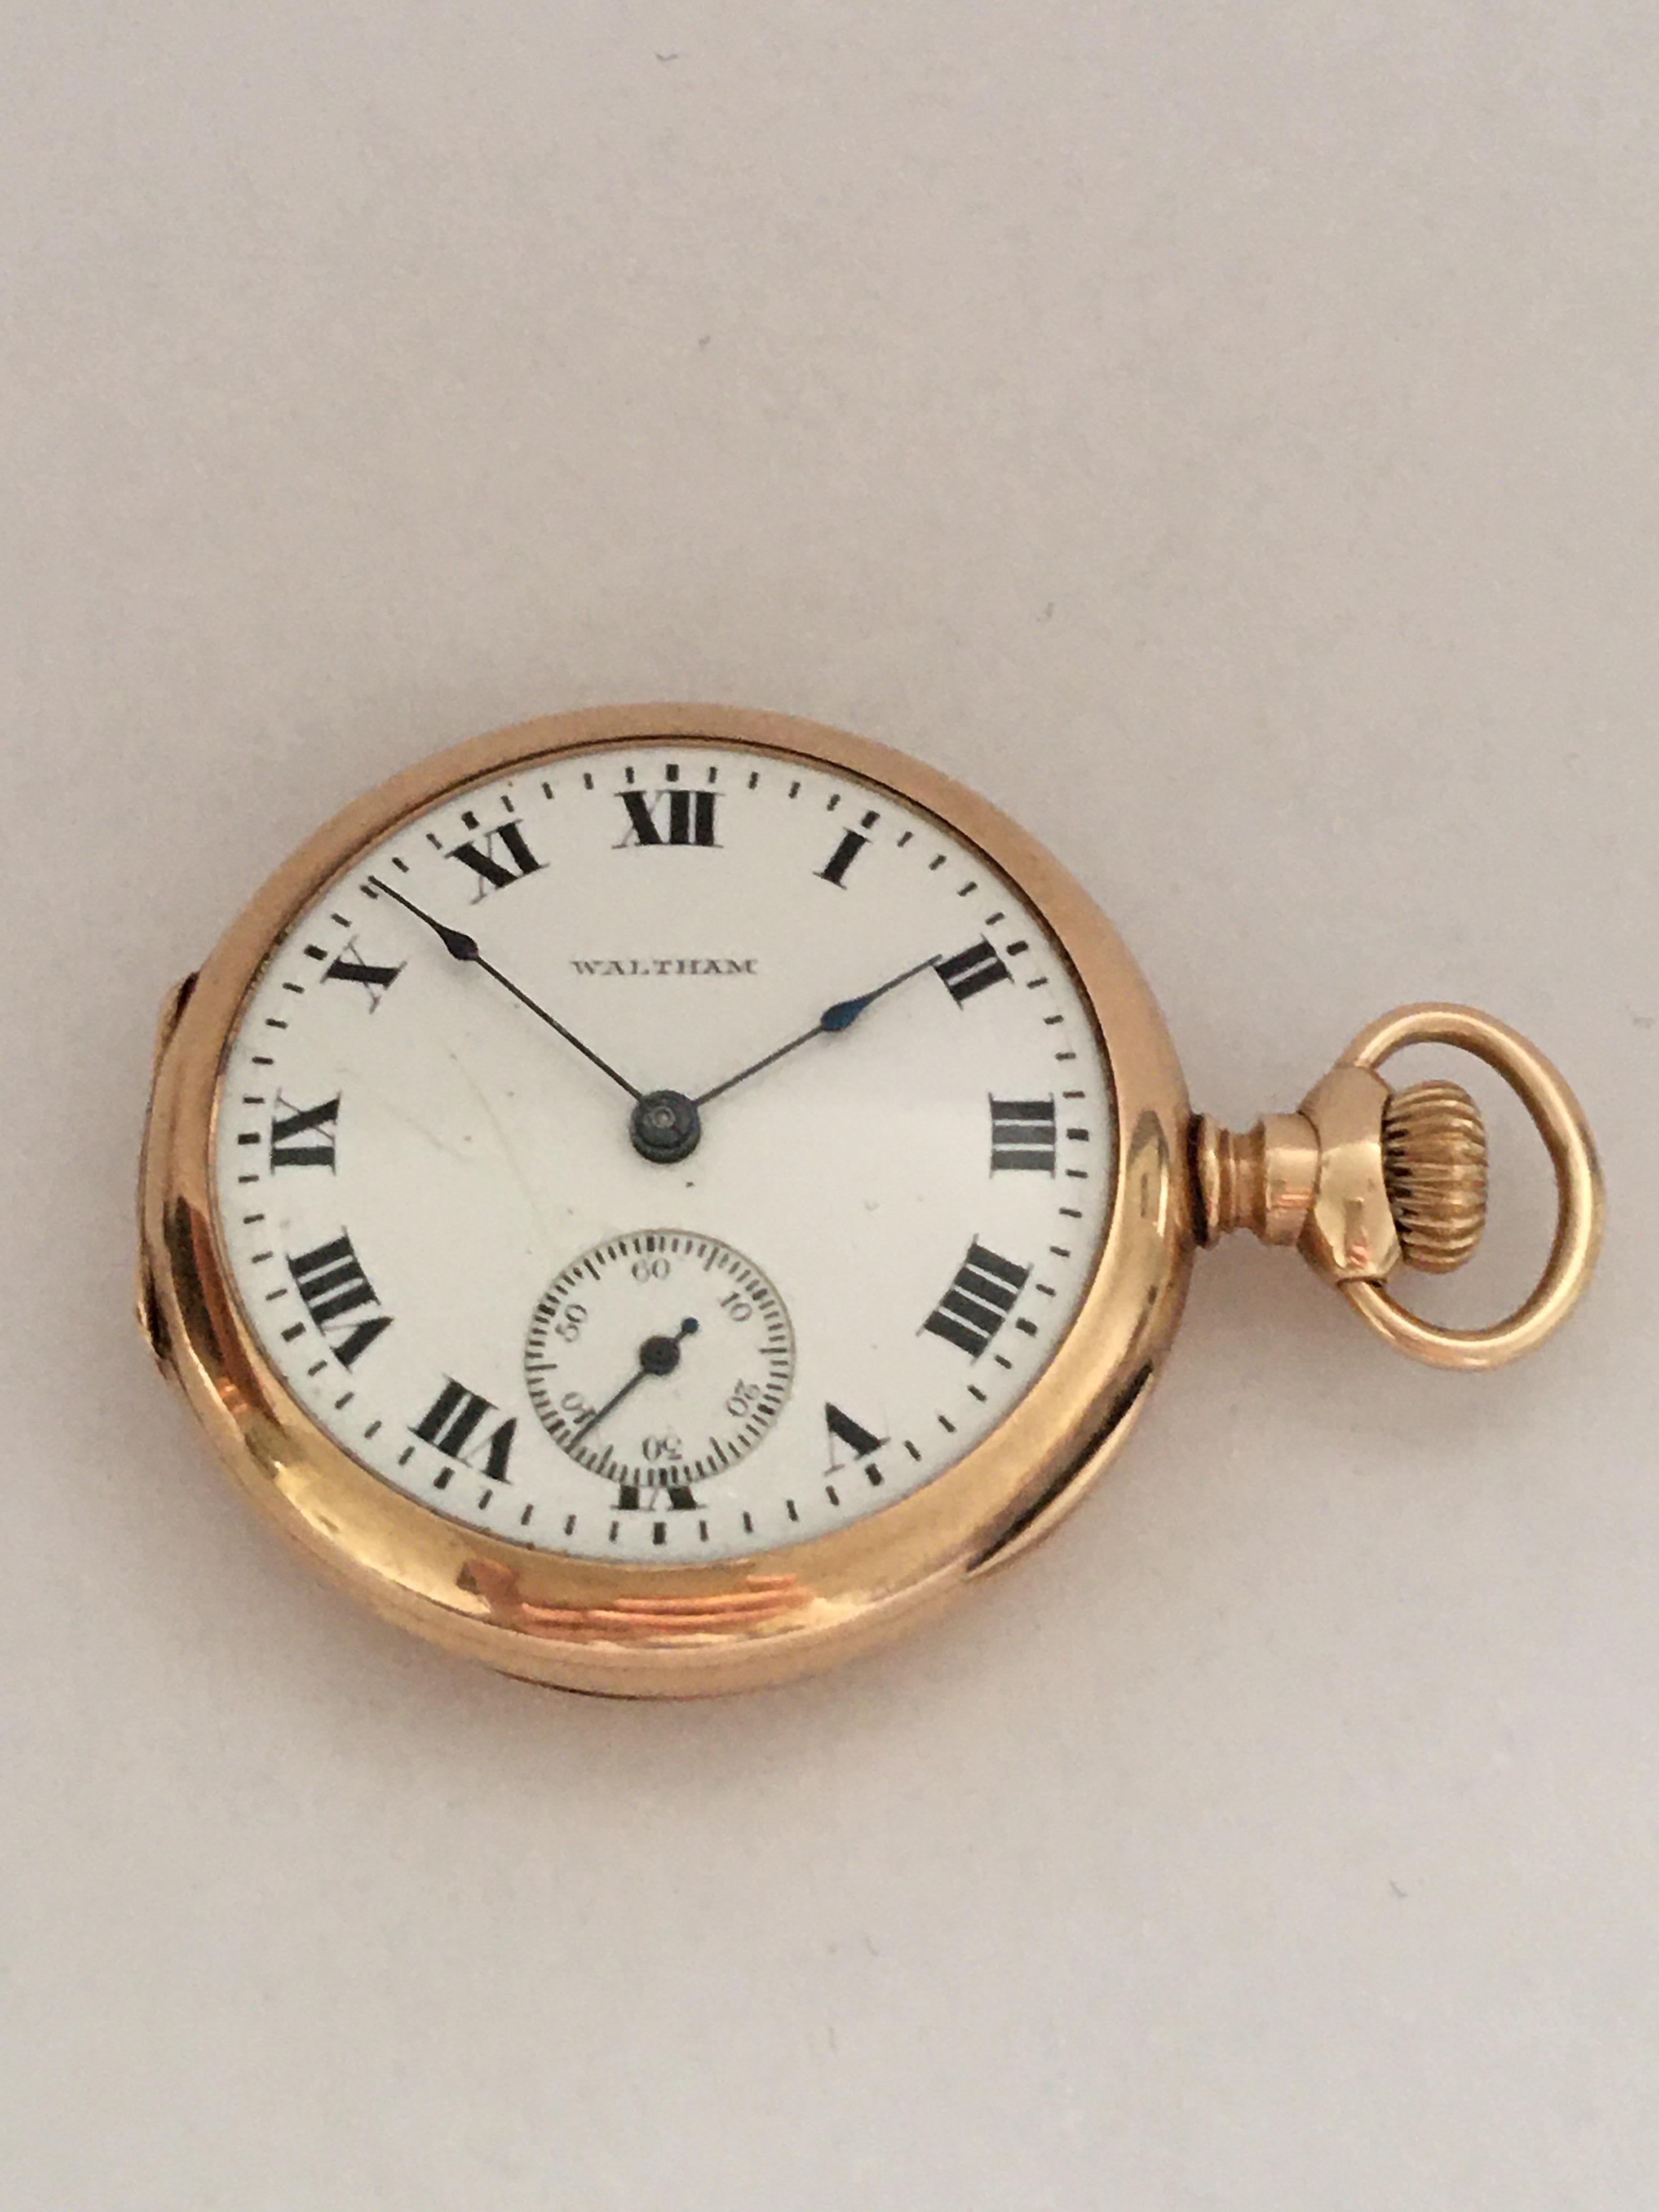 14 Karat Gold Small A.W.W. Co. Waltham Mass Pocket Watch For Sale 2